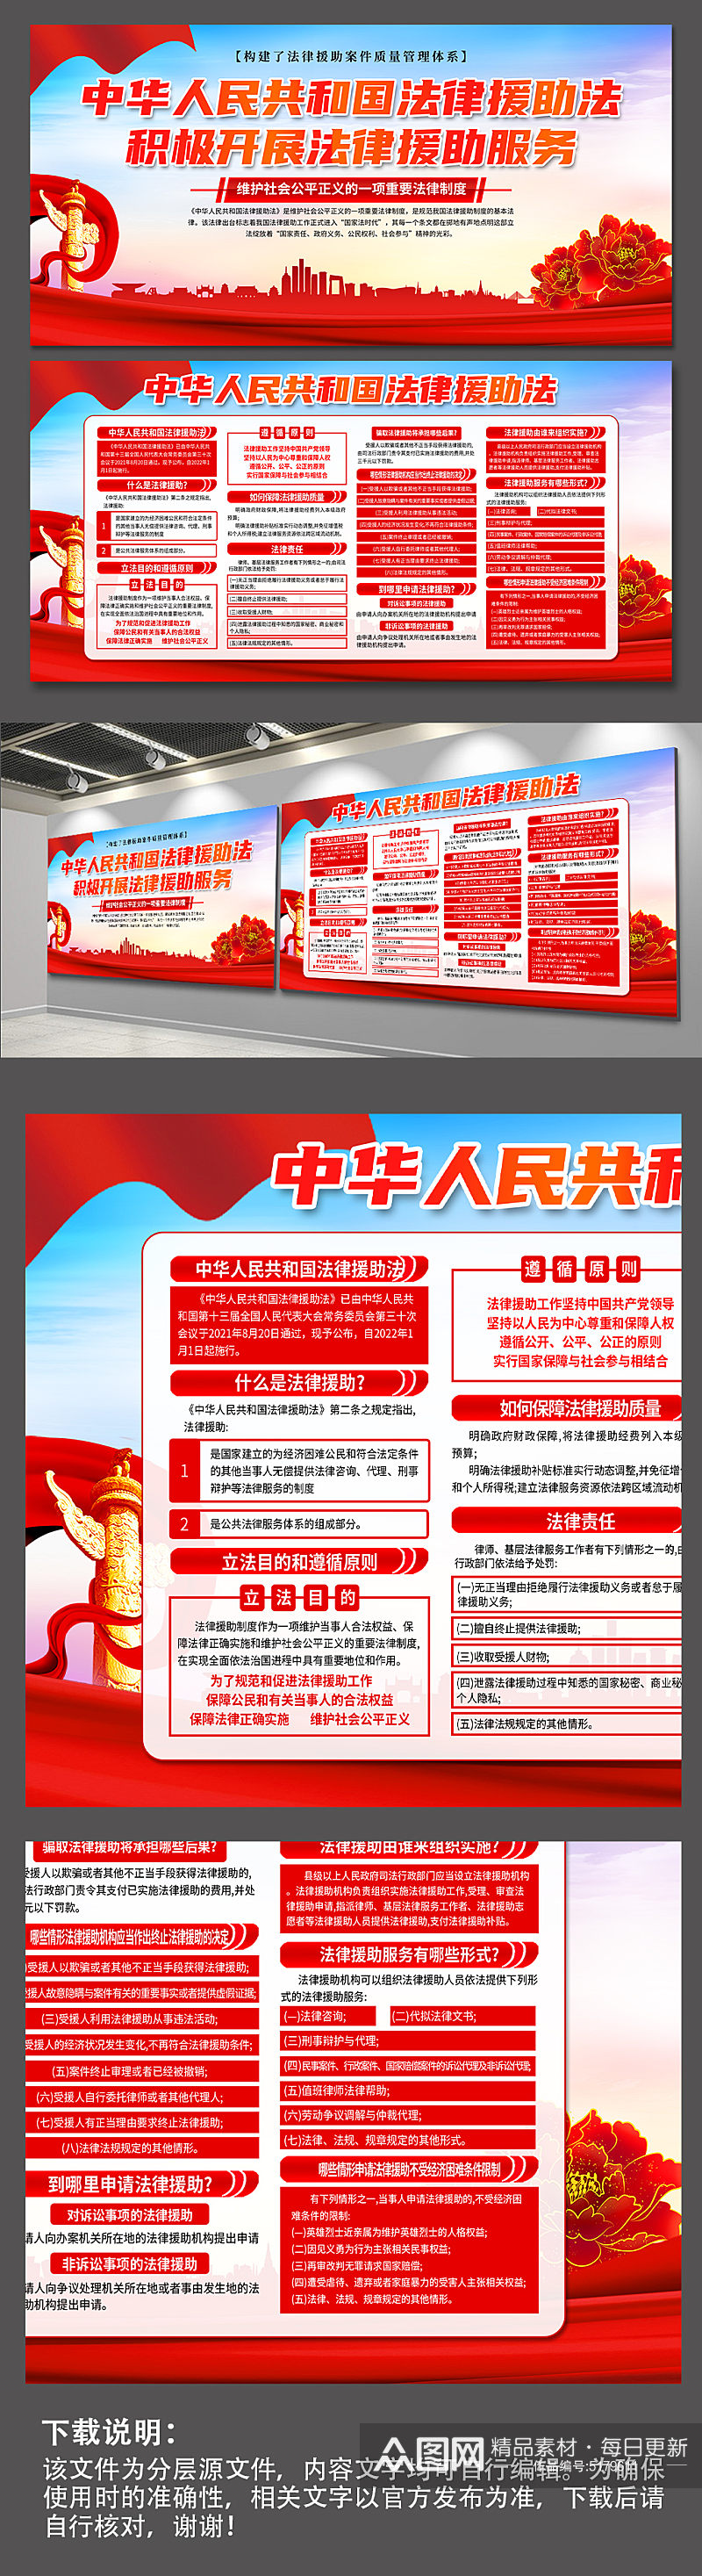 蓝色中华人民共和国法律援助法党建展板素材